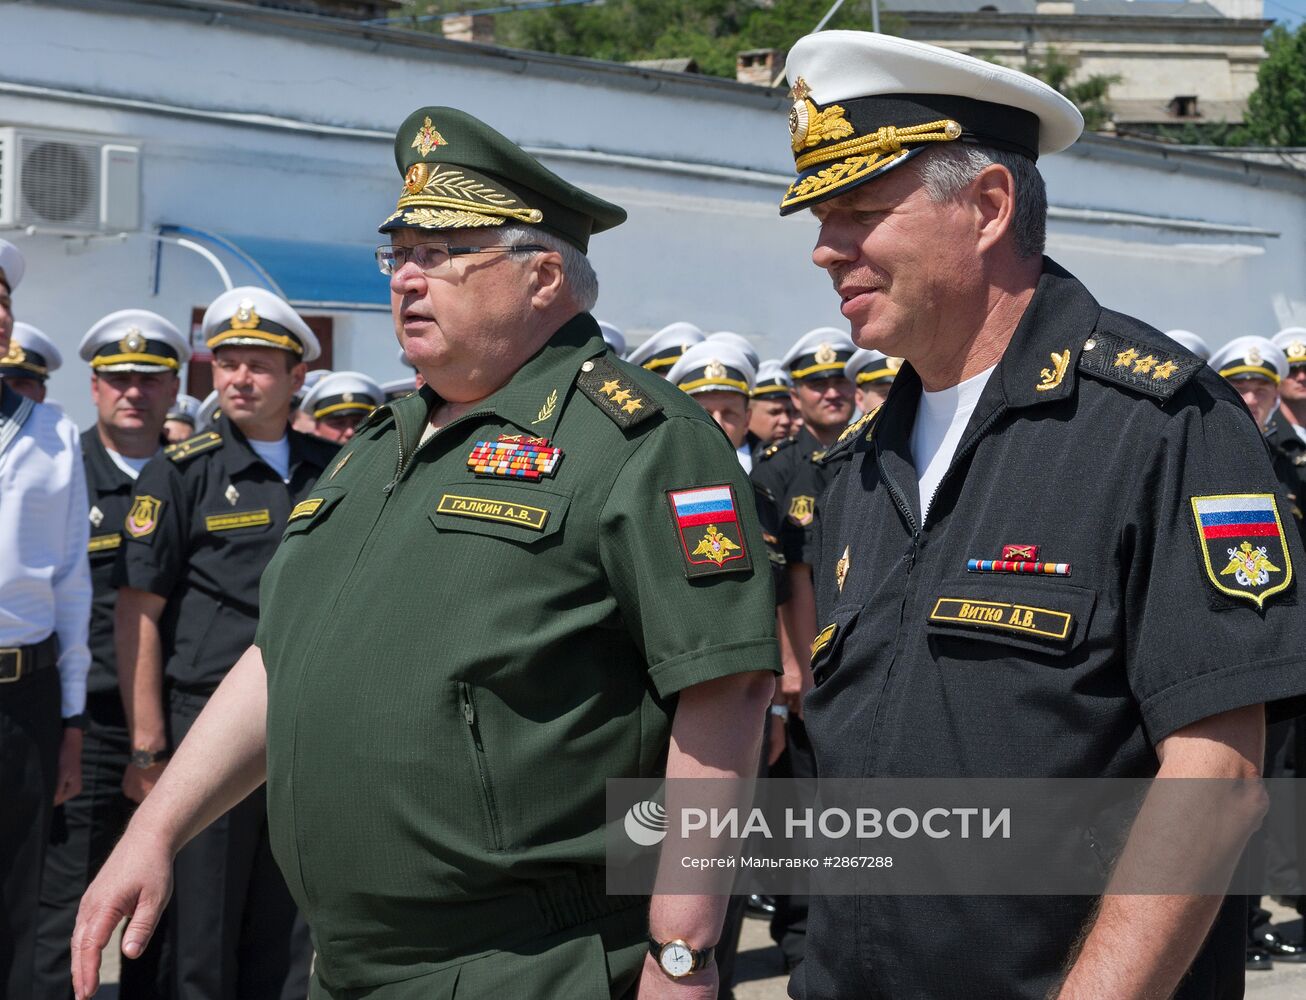 Прибытие нового сторожевого корабля "Адмирал Григорович" в Севастополь